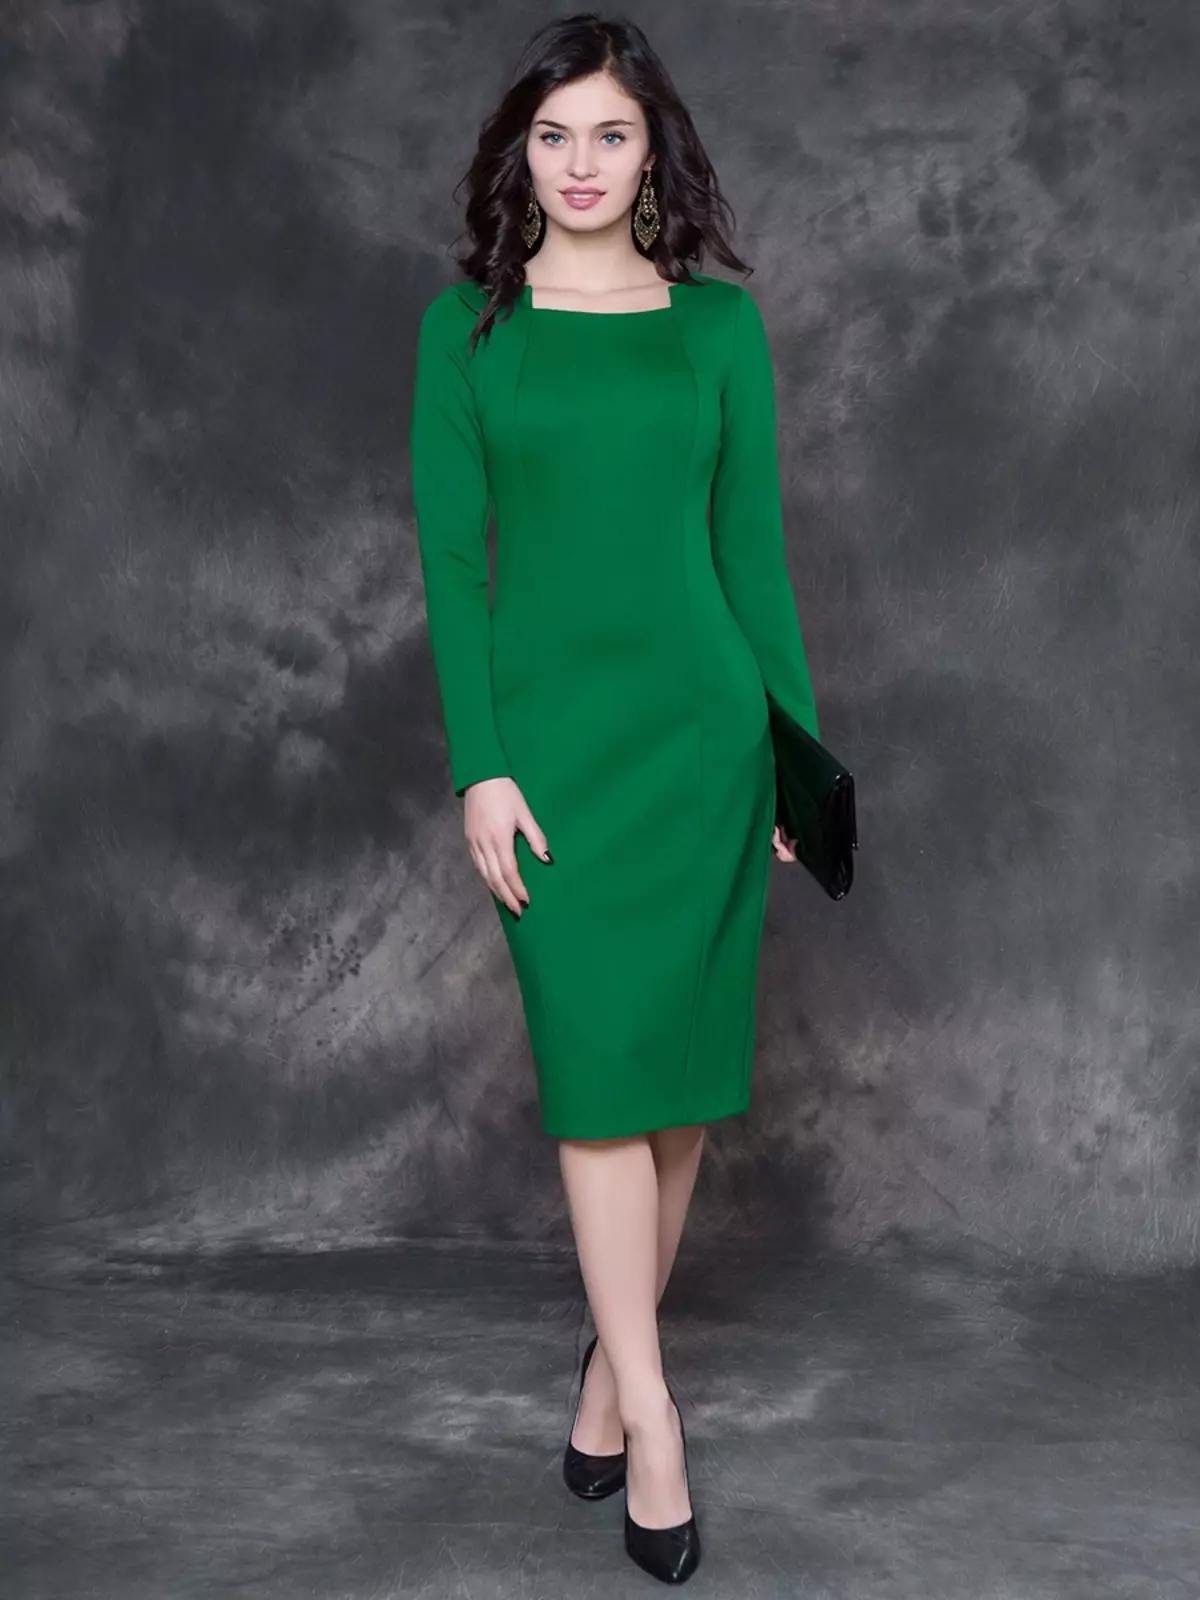 Zapatos de vestir verde (43 fotos): qué modelos se adaptan a los trajes de verde oscuro y otros tonos 2484_29